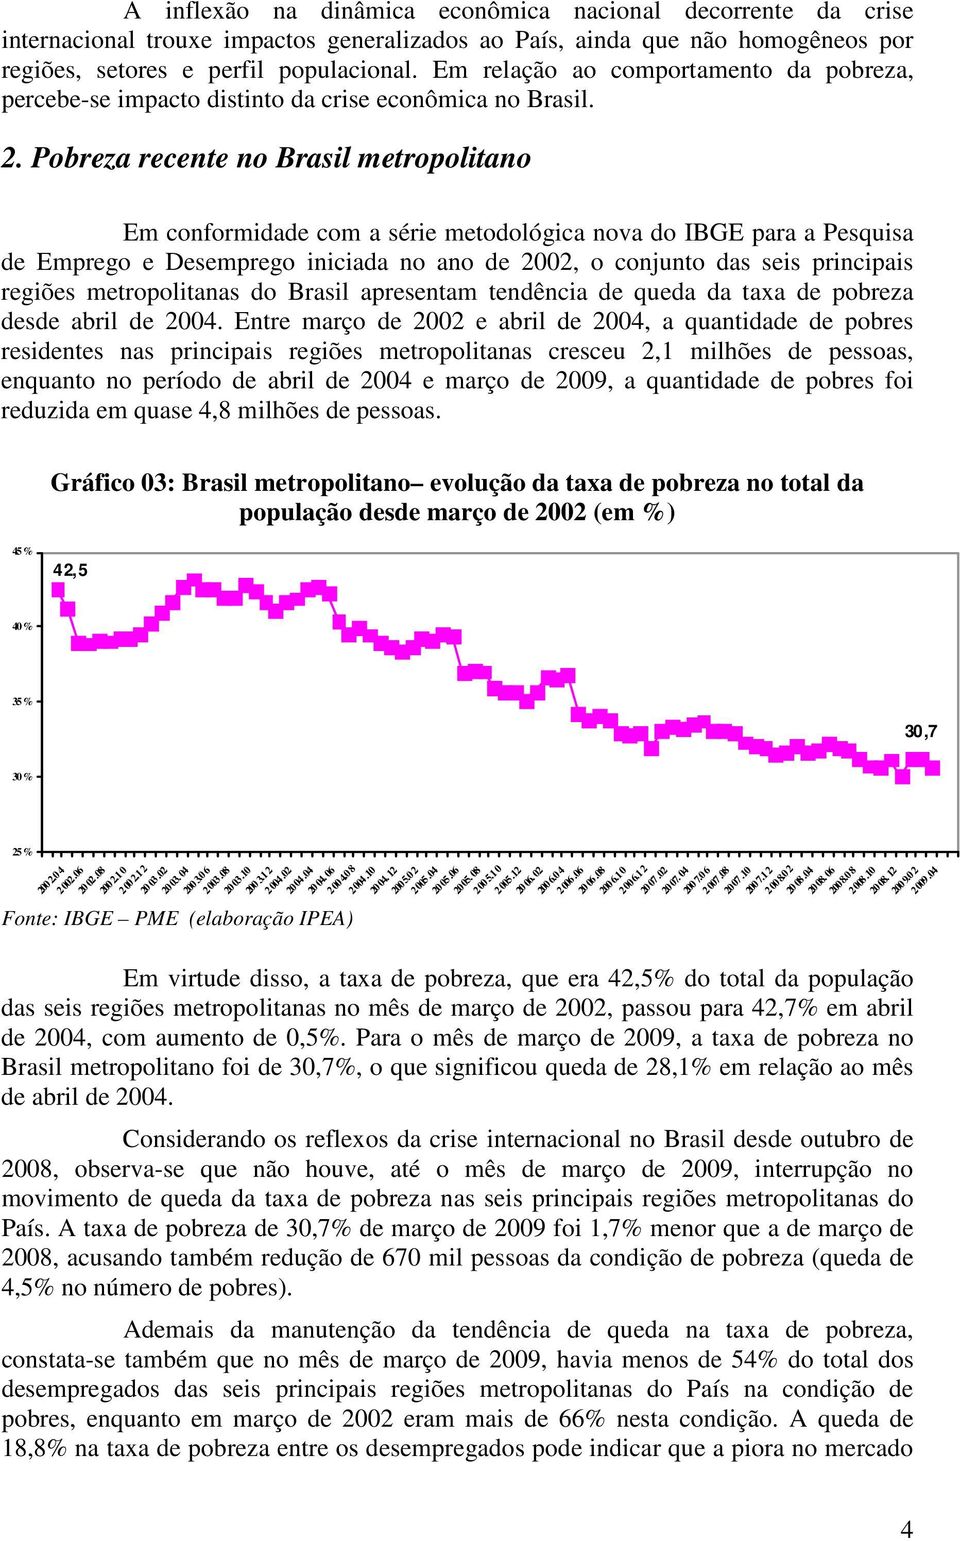 Pobreza recente no Brasil metropolitano Em conformidade com a série metodológica nova do IBGE para a Pesquisa de Emprego e Desemprego iniciada no ano de 2002, o conjunto das seis principais regiões